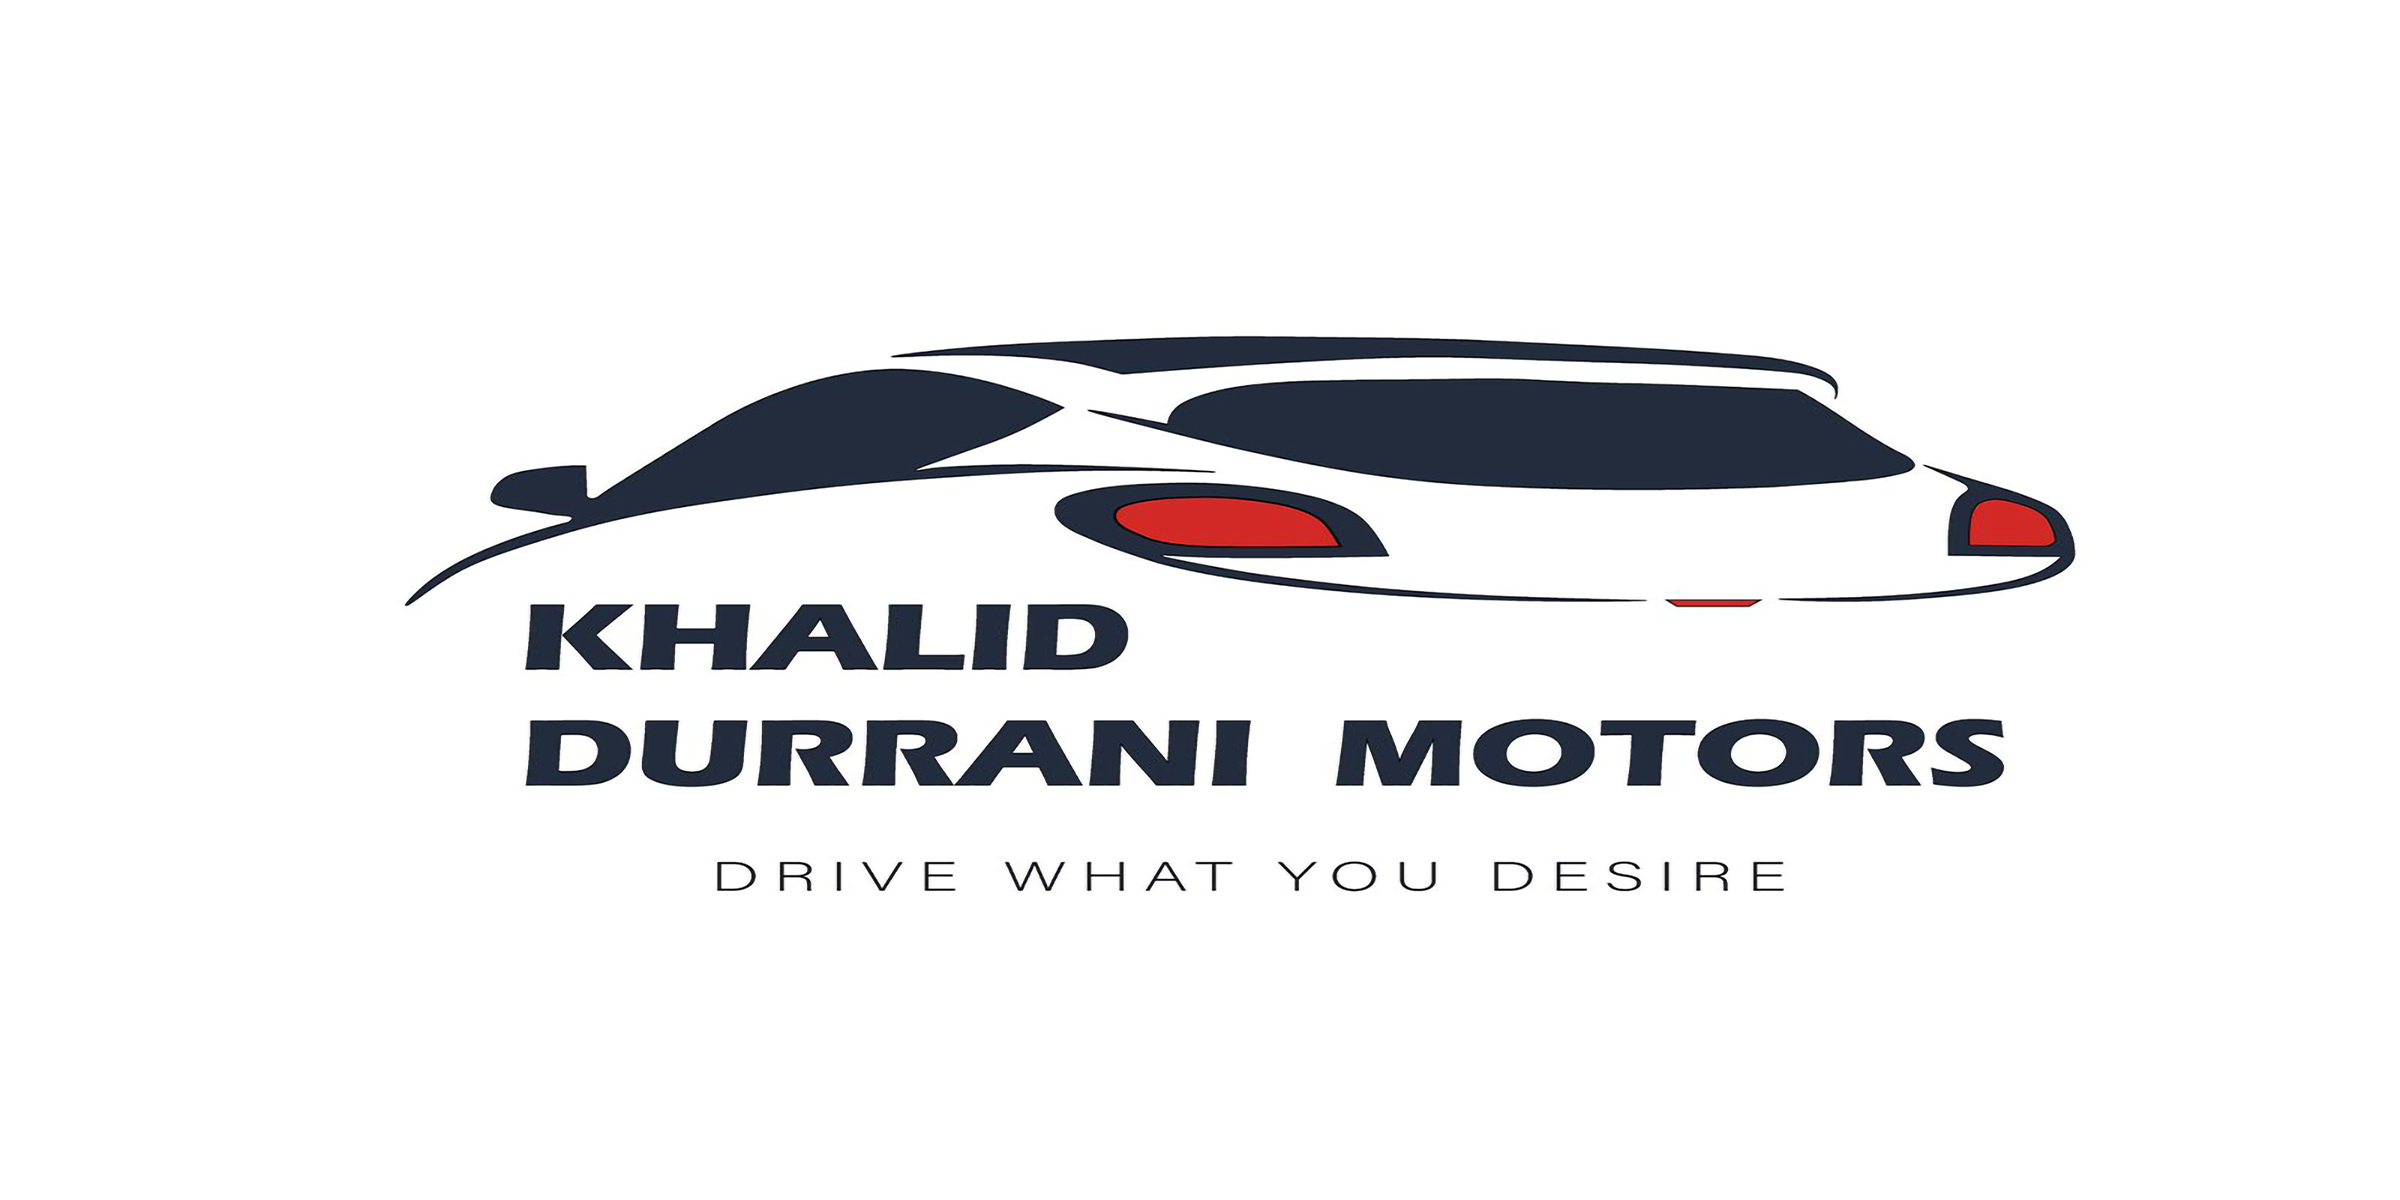 Khalid Durrani motors